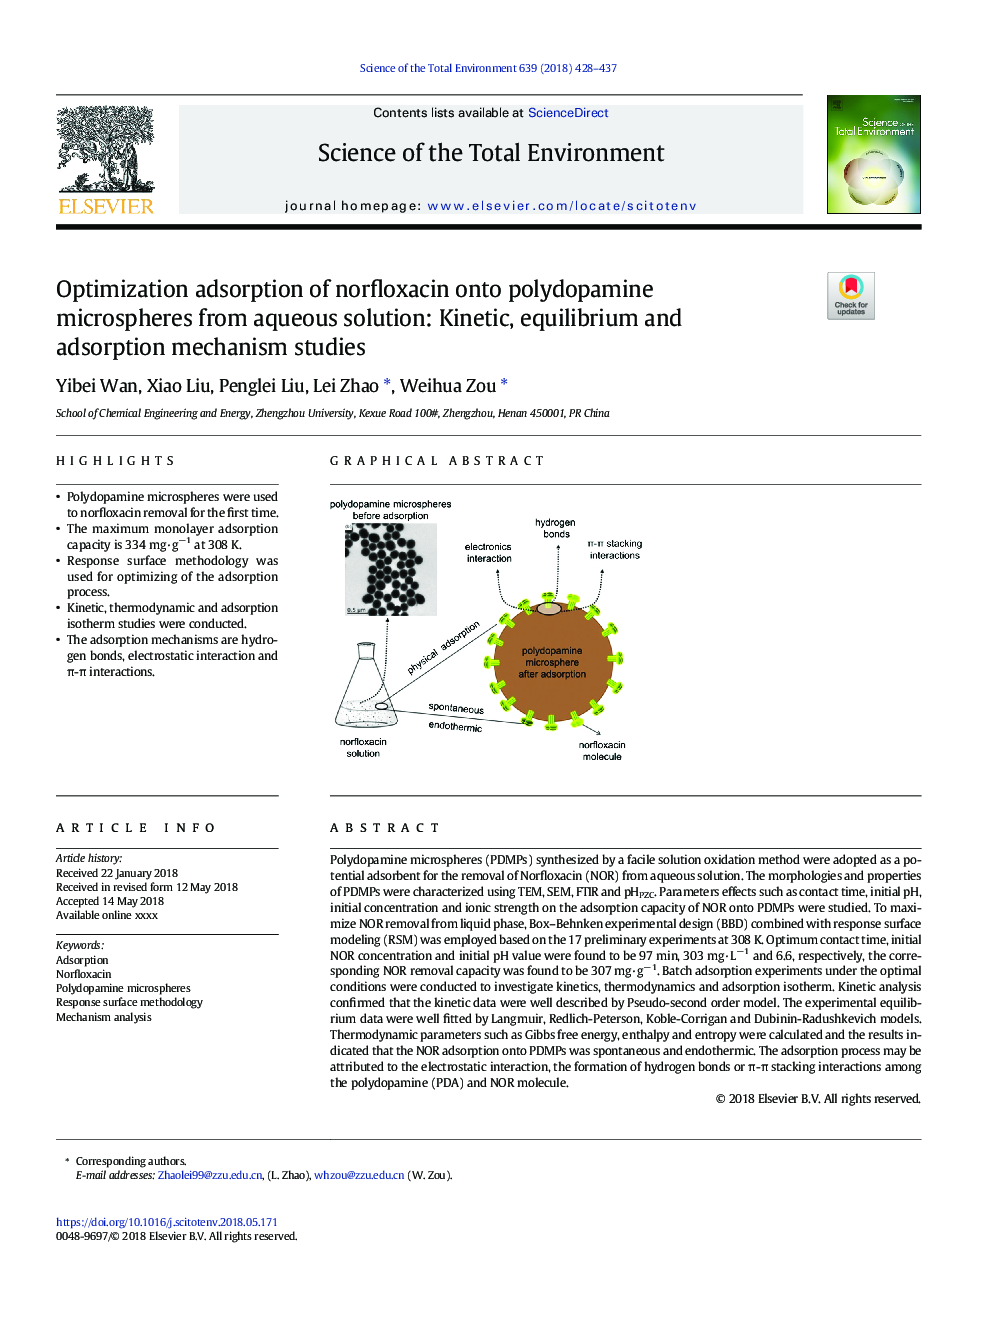 جذب بهینه سازی نورفلوکساسین بر میکروسکپ های پلیدوپامین از محلول های آبی: مطالعات مکانیک، تعادل و جذب 